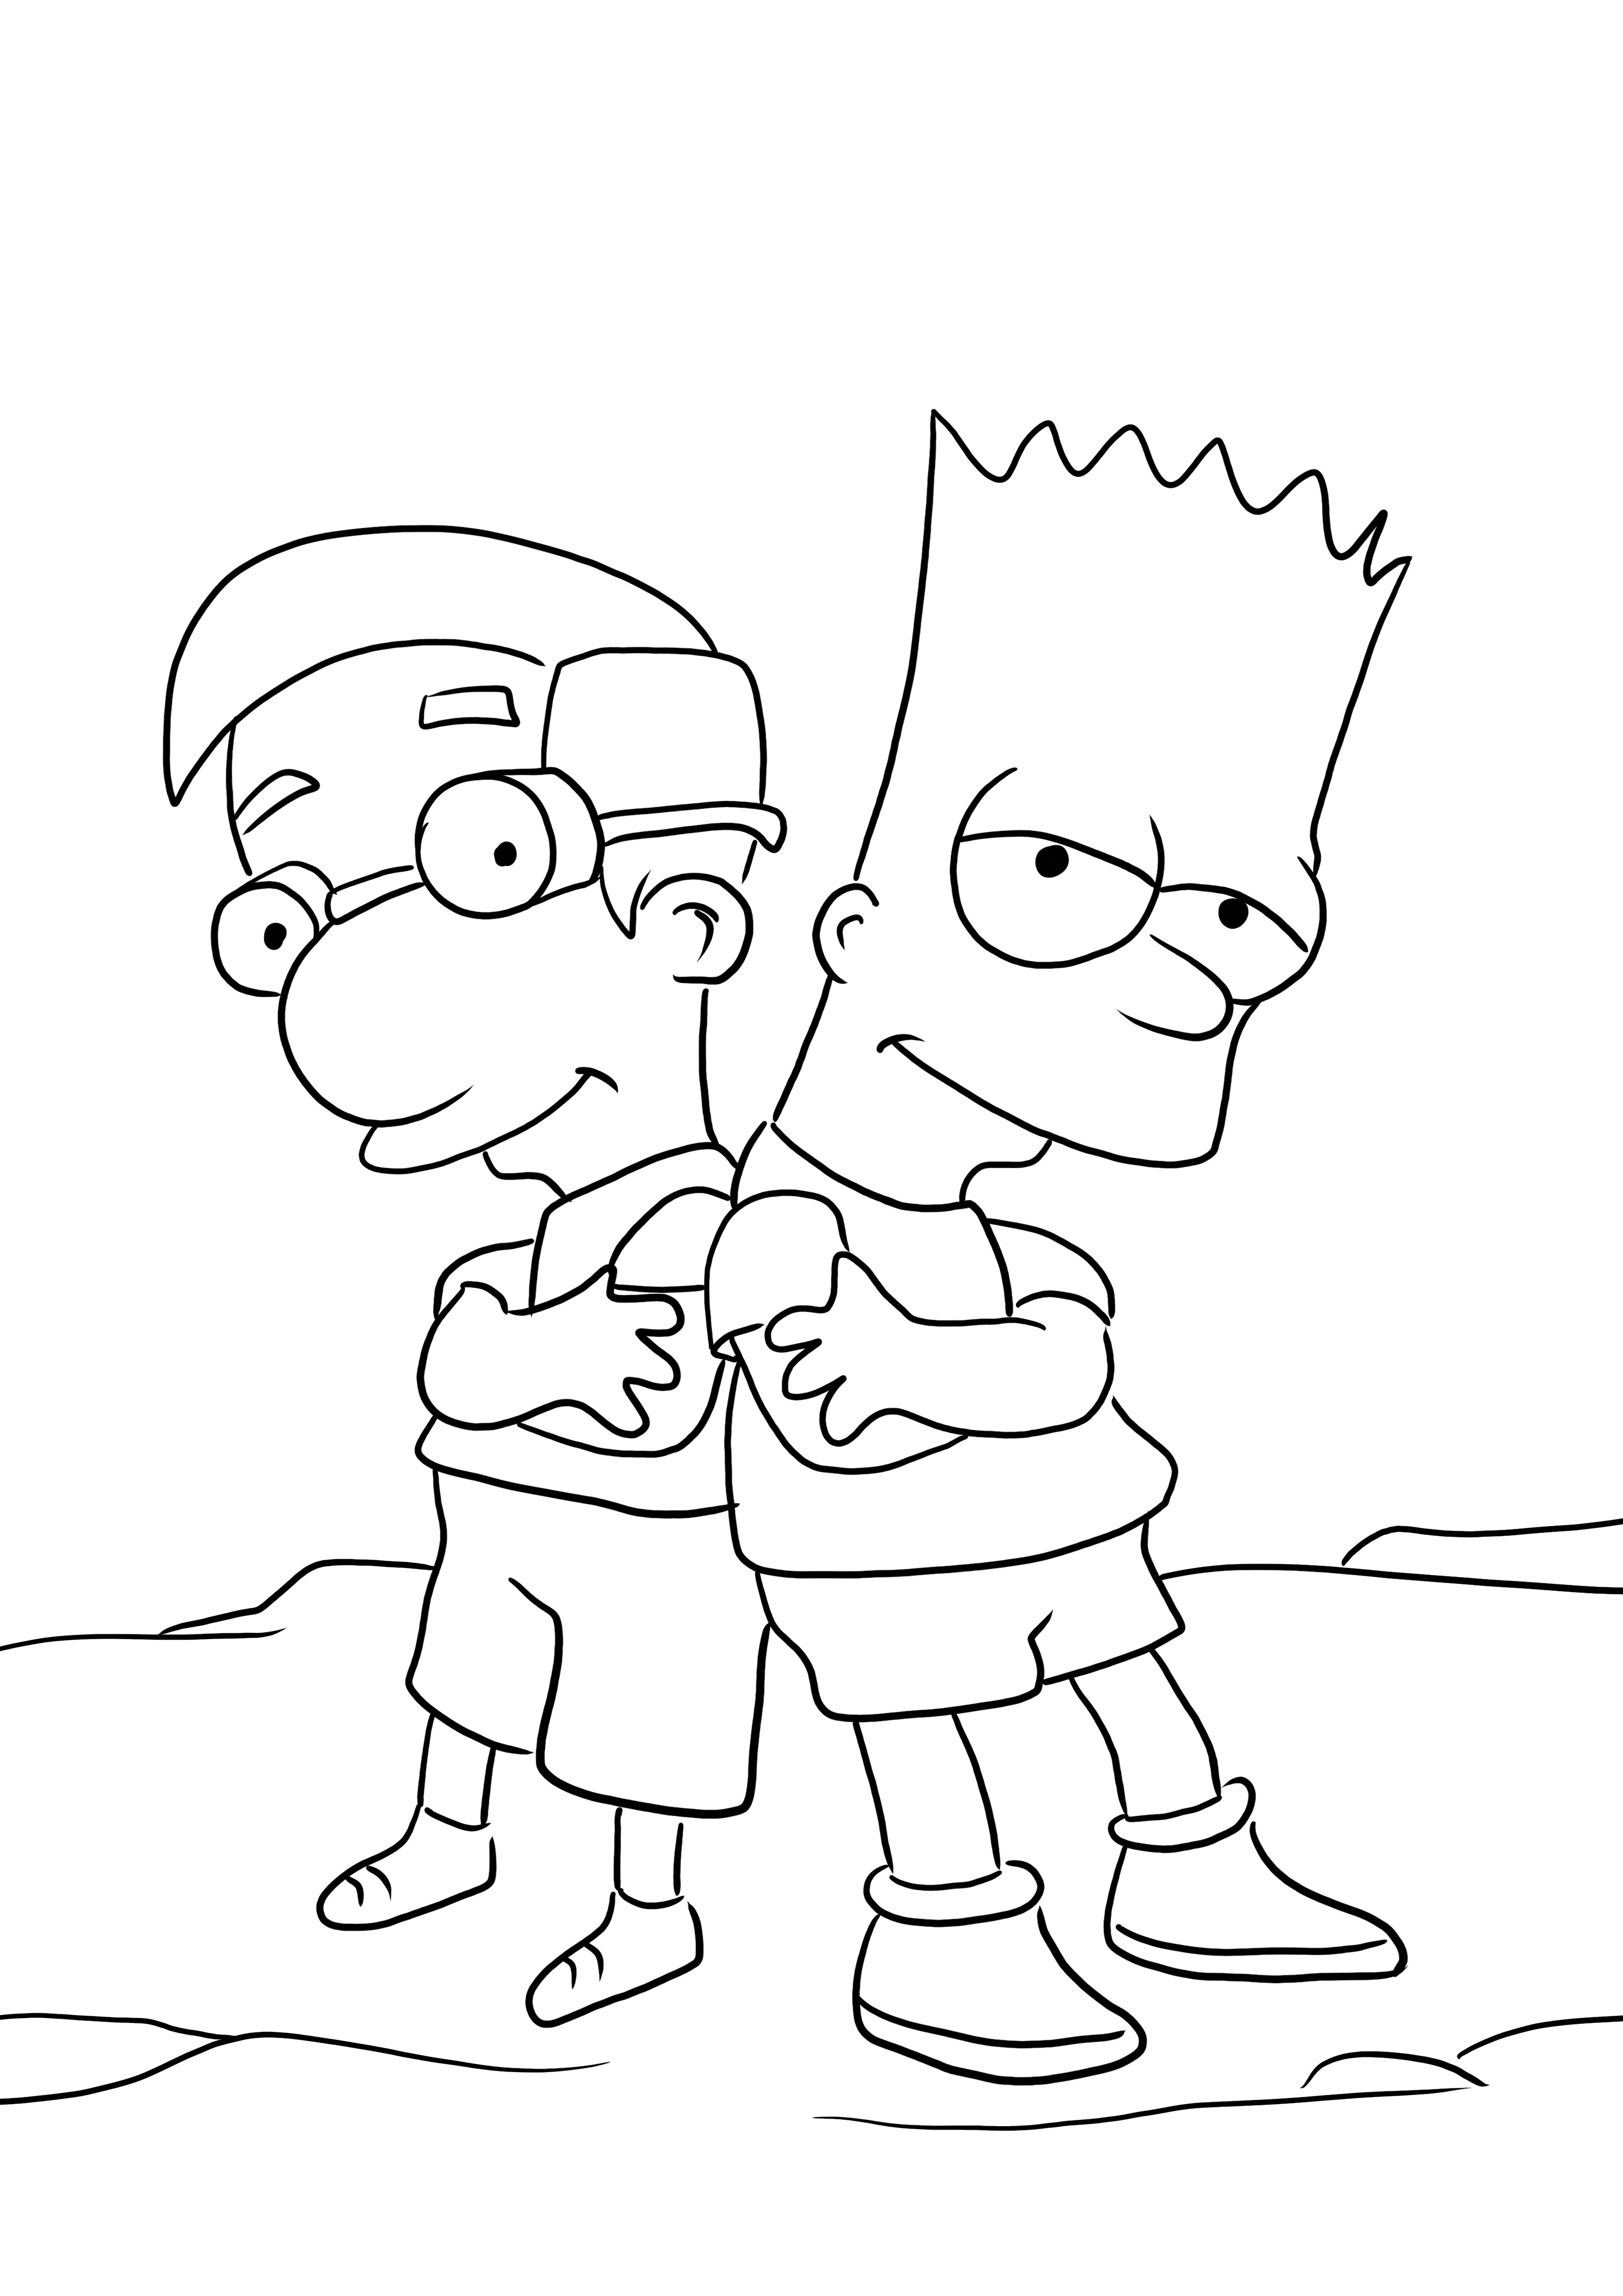 Boyama ve ücretsiz resim indirme için Bart ve Millhouse